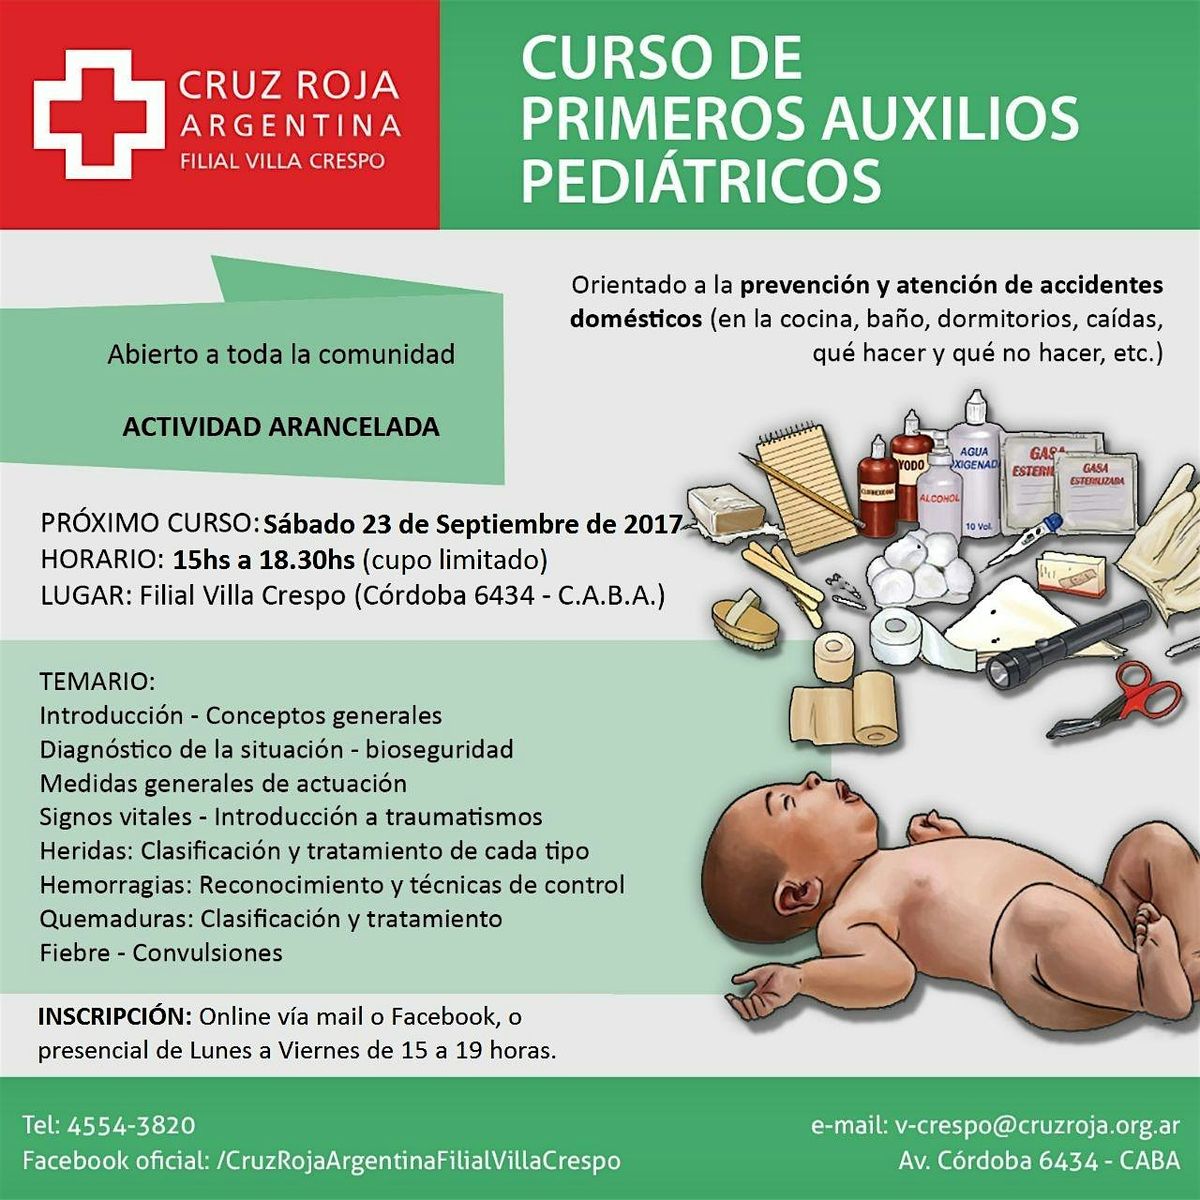 Curso de RCP en Cruz Roja mi\u00e9rcoles  10-07-24) 18 a 22 hs - Duraci\u00f3n 4 hs.